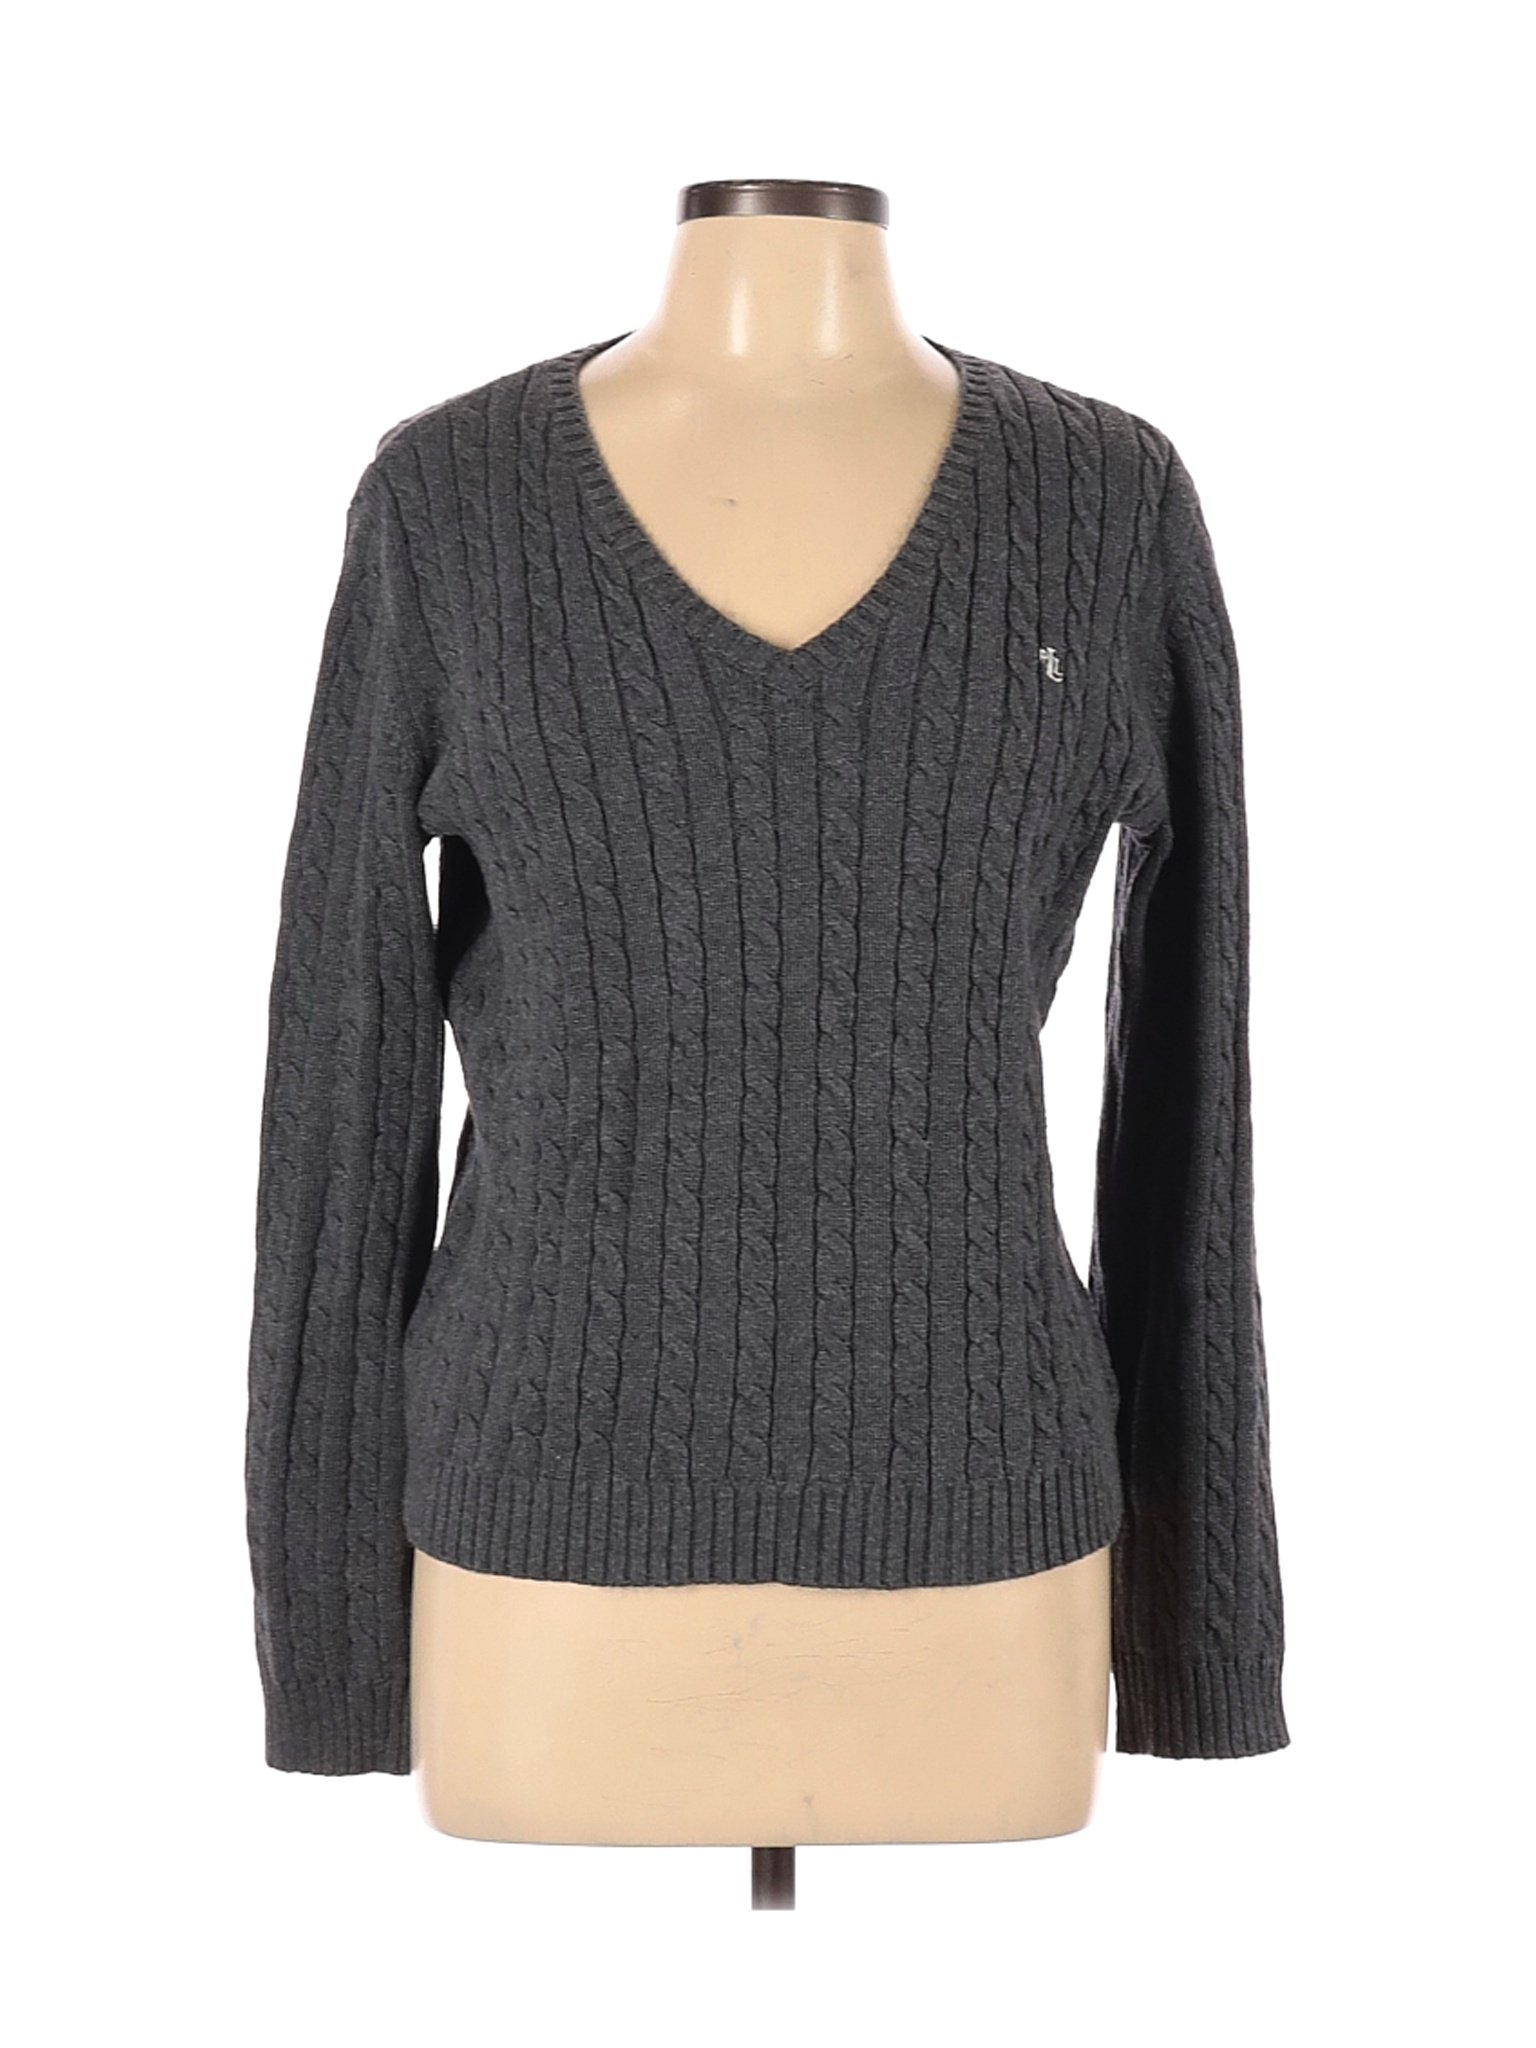 Lauren by Ralph Lauren Women Gray Pullover Sweater L | eBay